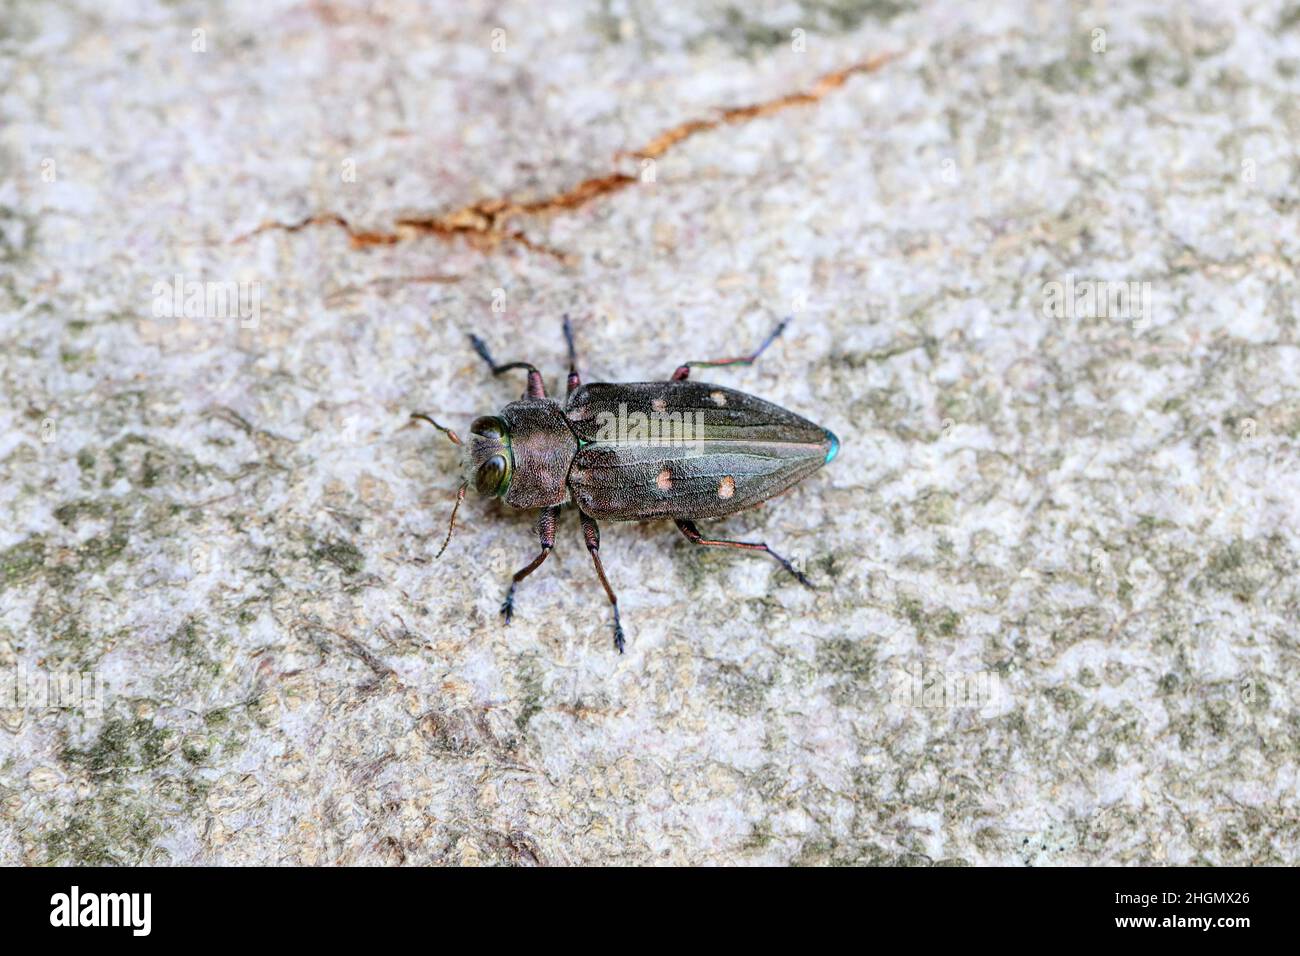 Ein schöner Schmuckkäfer aus Metall - Chrysobothris affinis, Buprestidae, der auf der Rinde eines Baumes im Wald sitzt. Stockfoto